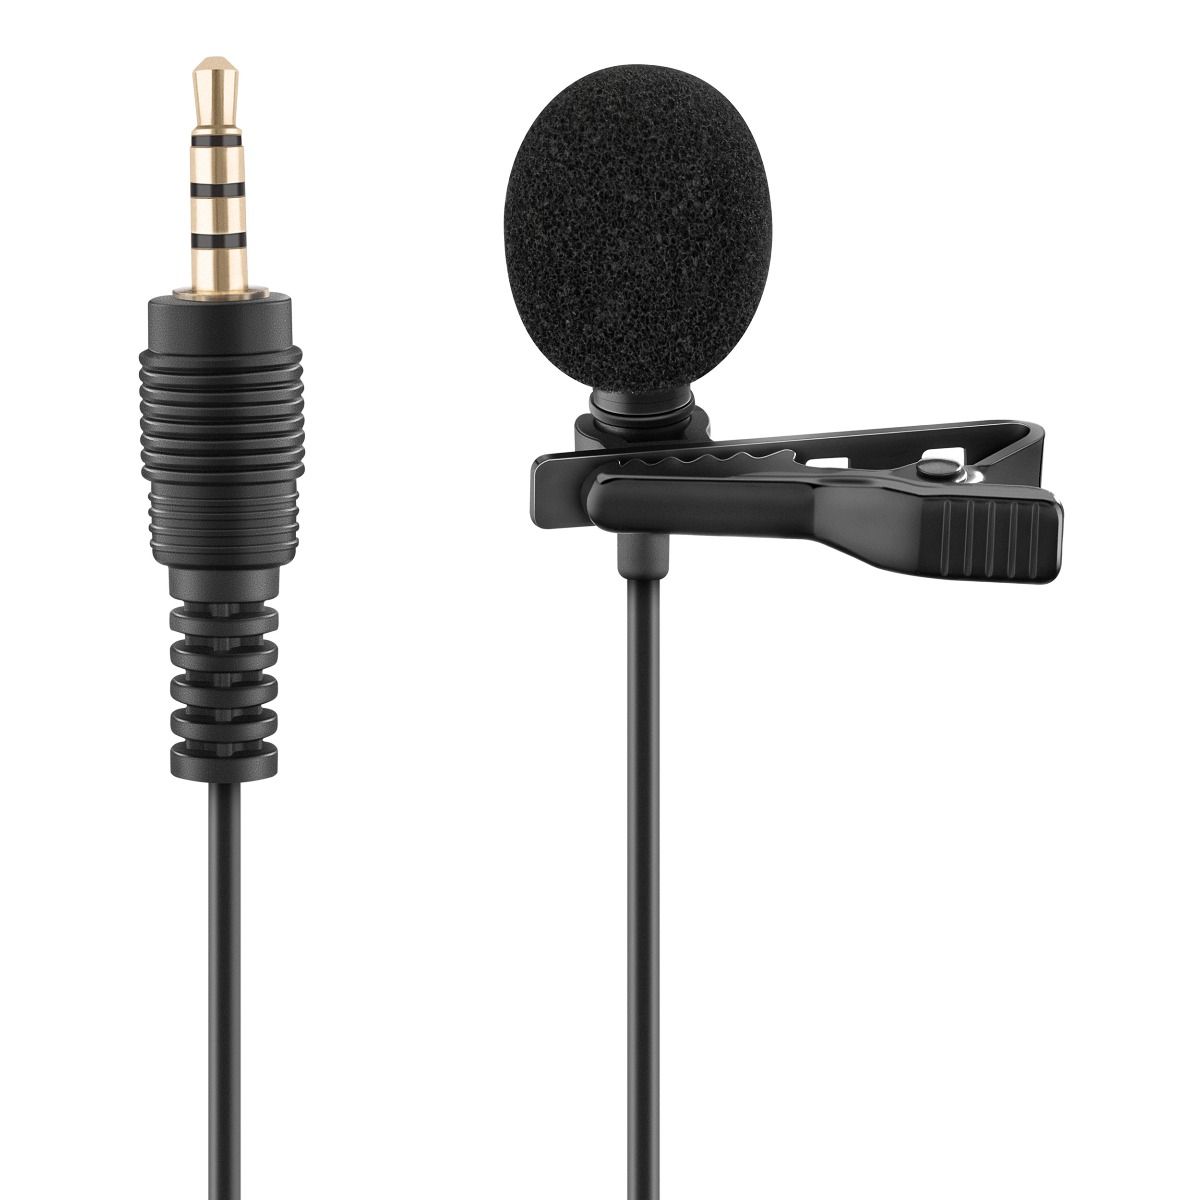 micrófono de 3,5 mm para teléfonos móviles, accesorios para